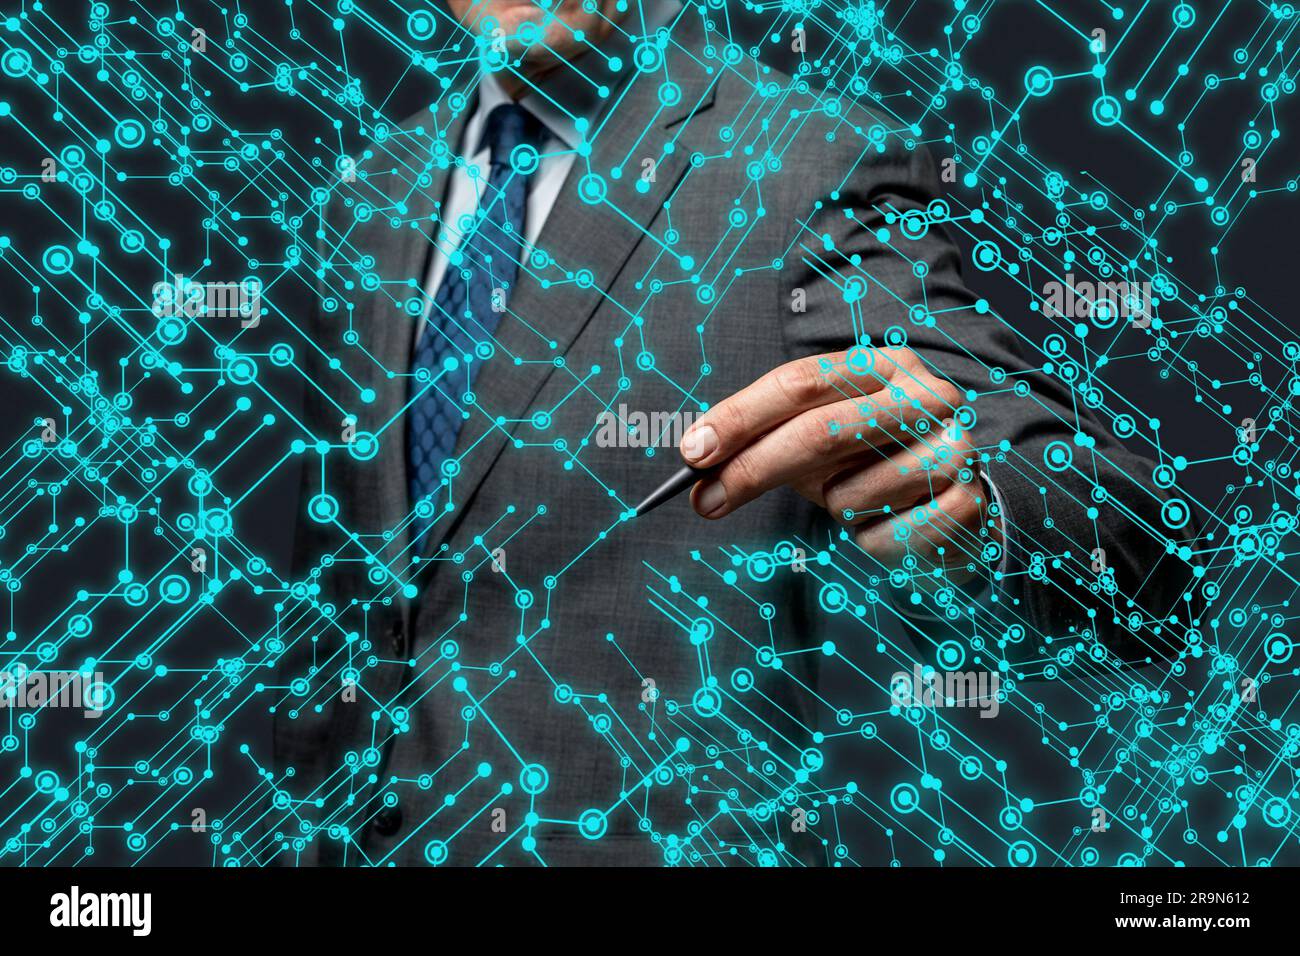 Un homme utilisant la technologie hologramme, papier peint hd, écran numérique Banque D'Images